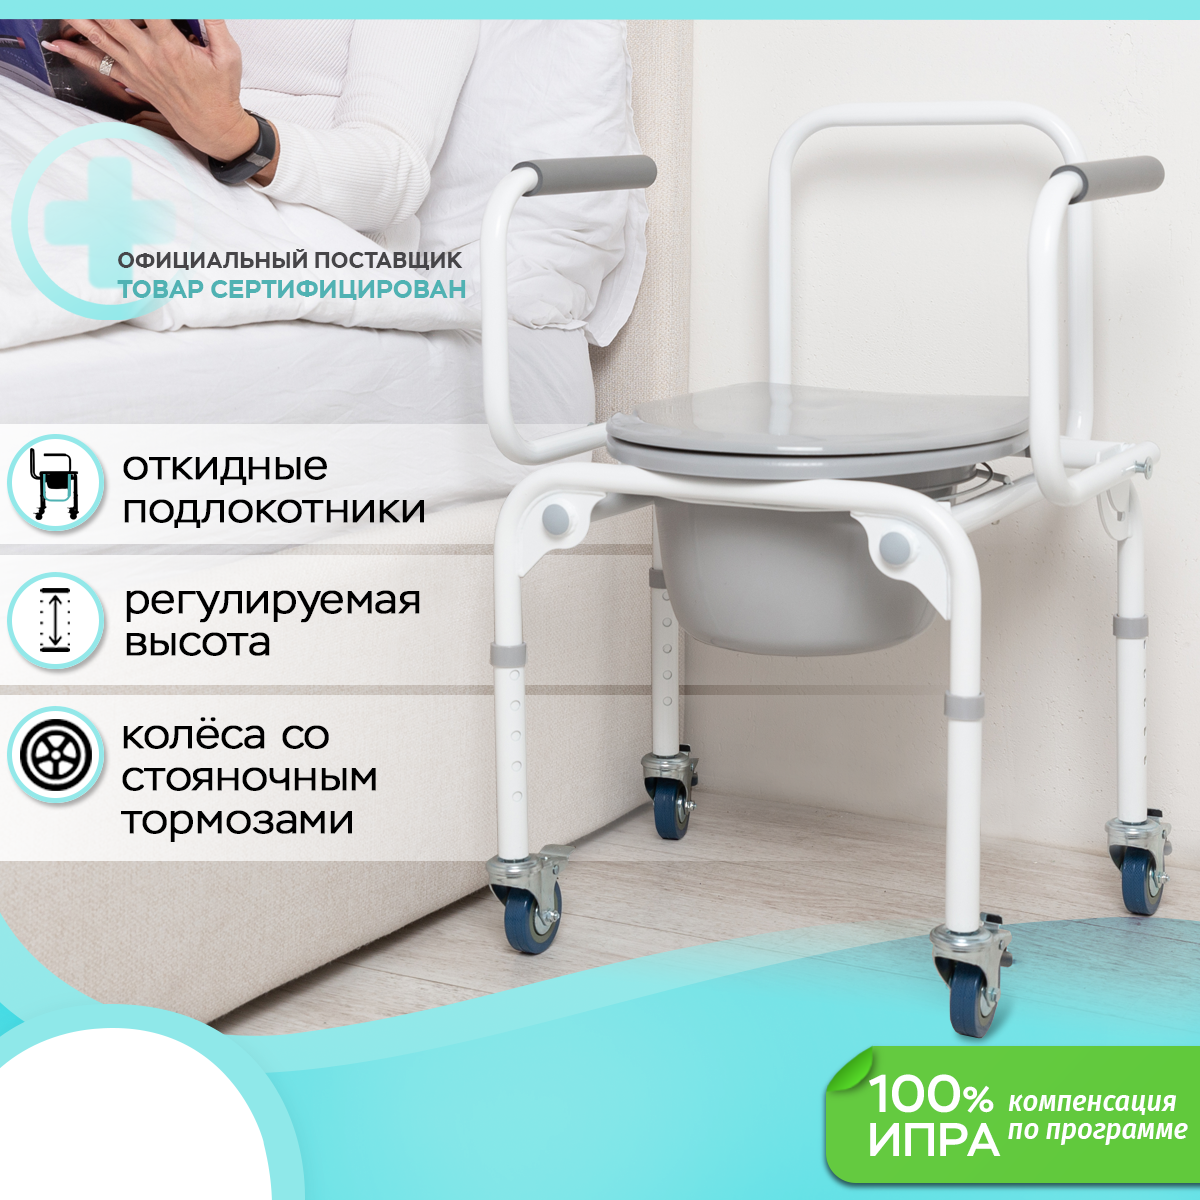 Кресло туалет Ortonica TU80 для пожилых и инвалидов (ширина 45 см) код ФСС 23-01-01